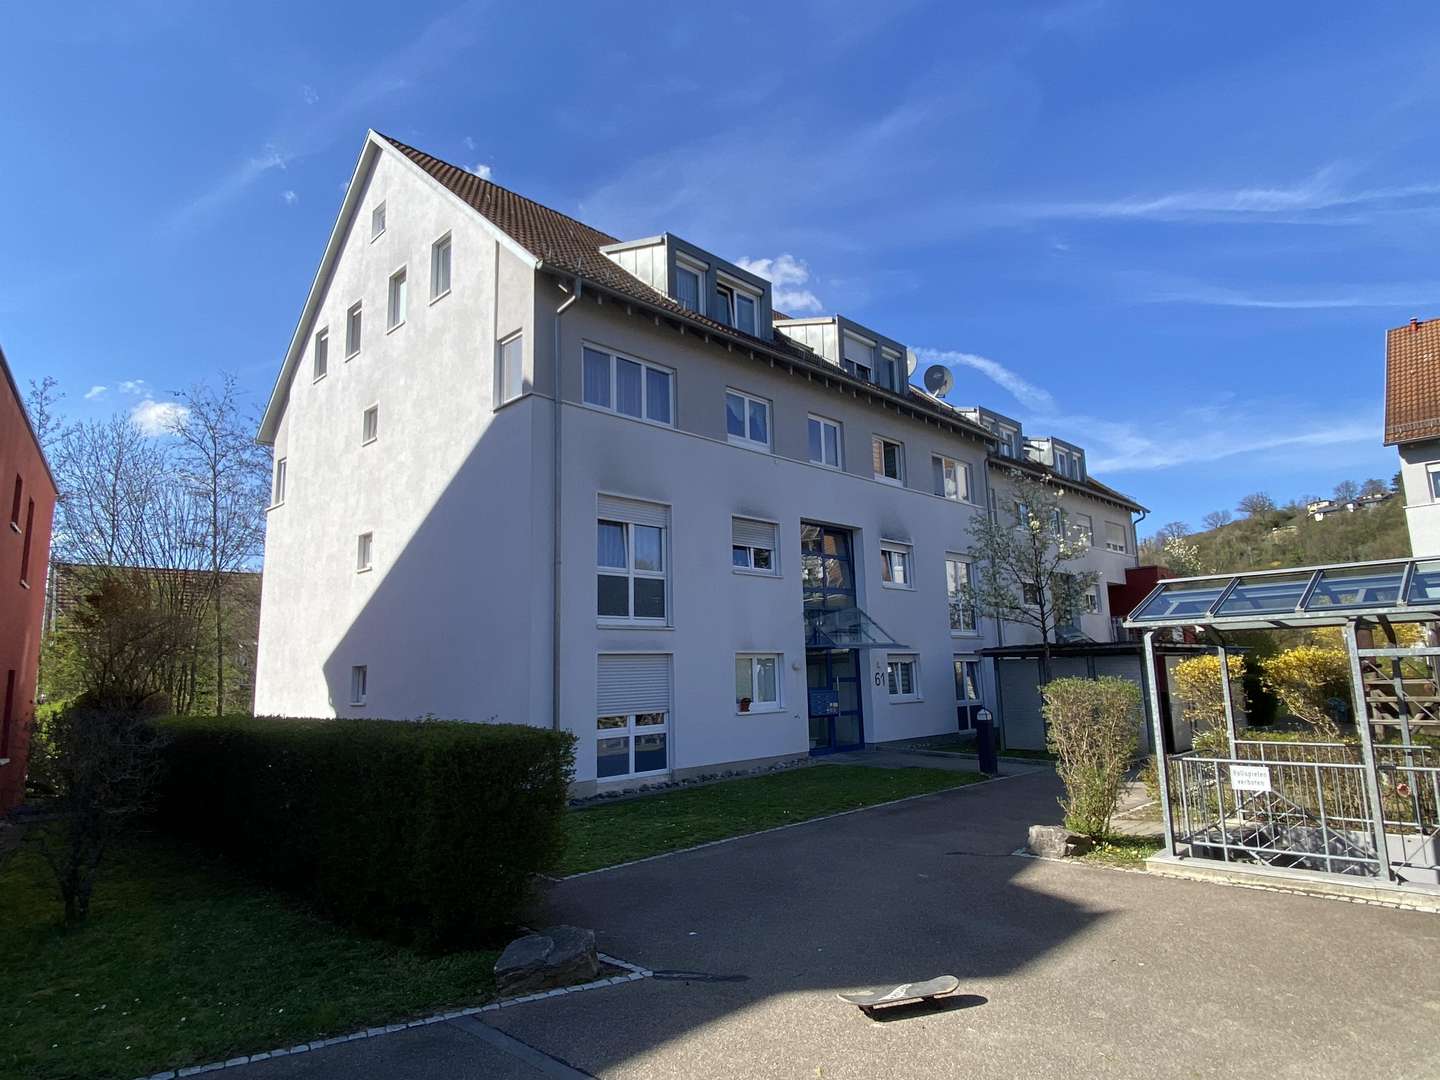 IMG_5036 - Dachgeschosswohnung in 73230 Kirchheim mit 58m² kaufen